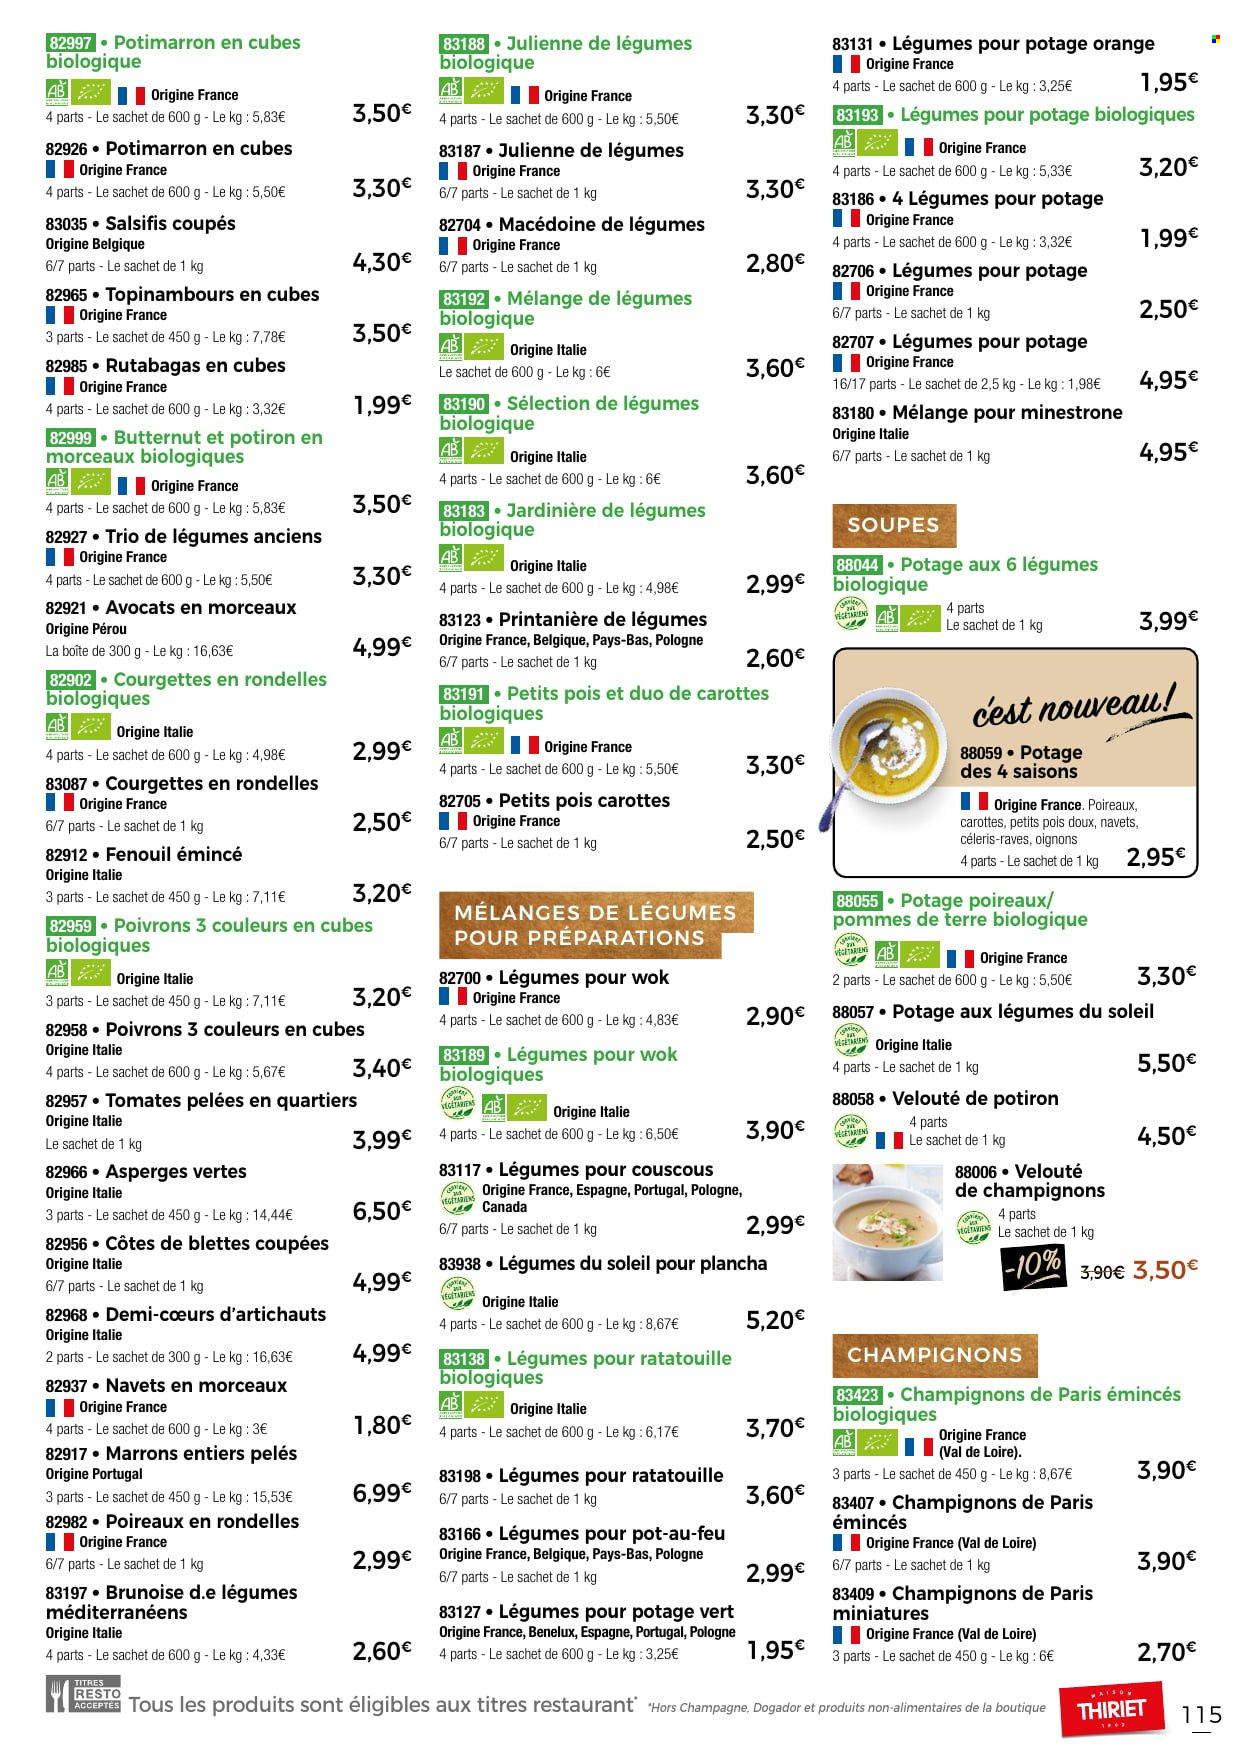 thumbnail - Catalogue Thiriet - 24/11/2022 - 31/12/2022 - Produits soldés - alcool, tomates, courgette, oignons, poivrons, marrons, pommes de terre, pot-au-feu, champignon, champignon de Paris, macédoine de légumes, ratatouille, velouté, petit pois, couscous, fenouil, champagne. Page 115.